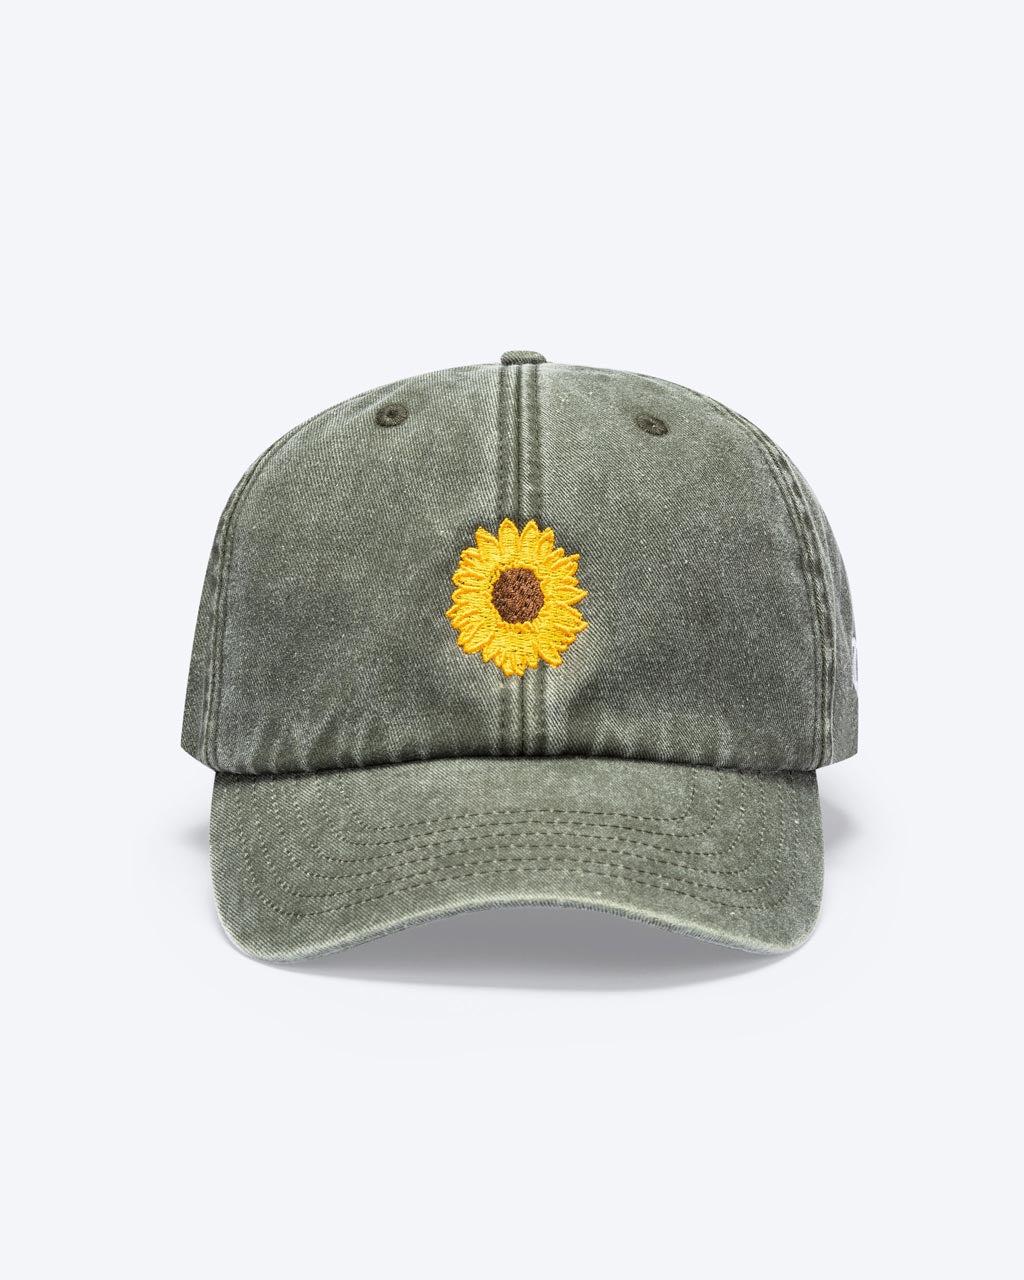 Eine Bavarian Cap in der Farbe Vintage Khaki mit einer Sonnenblume als Motiv auf der Vorderseite.